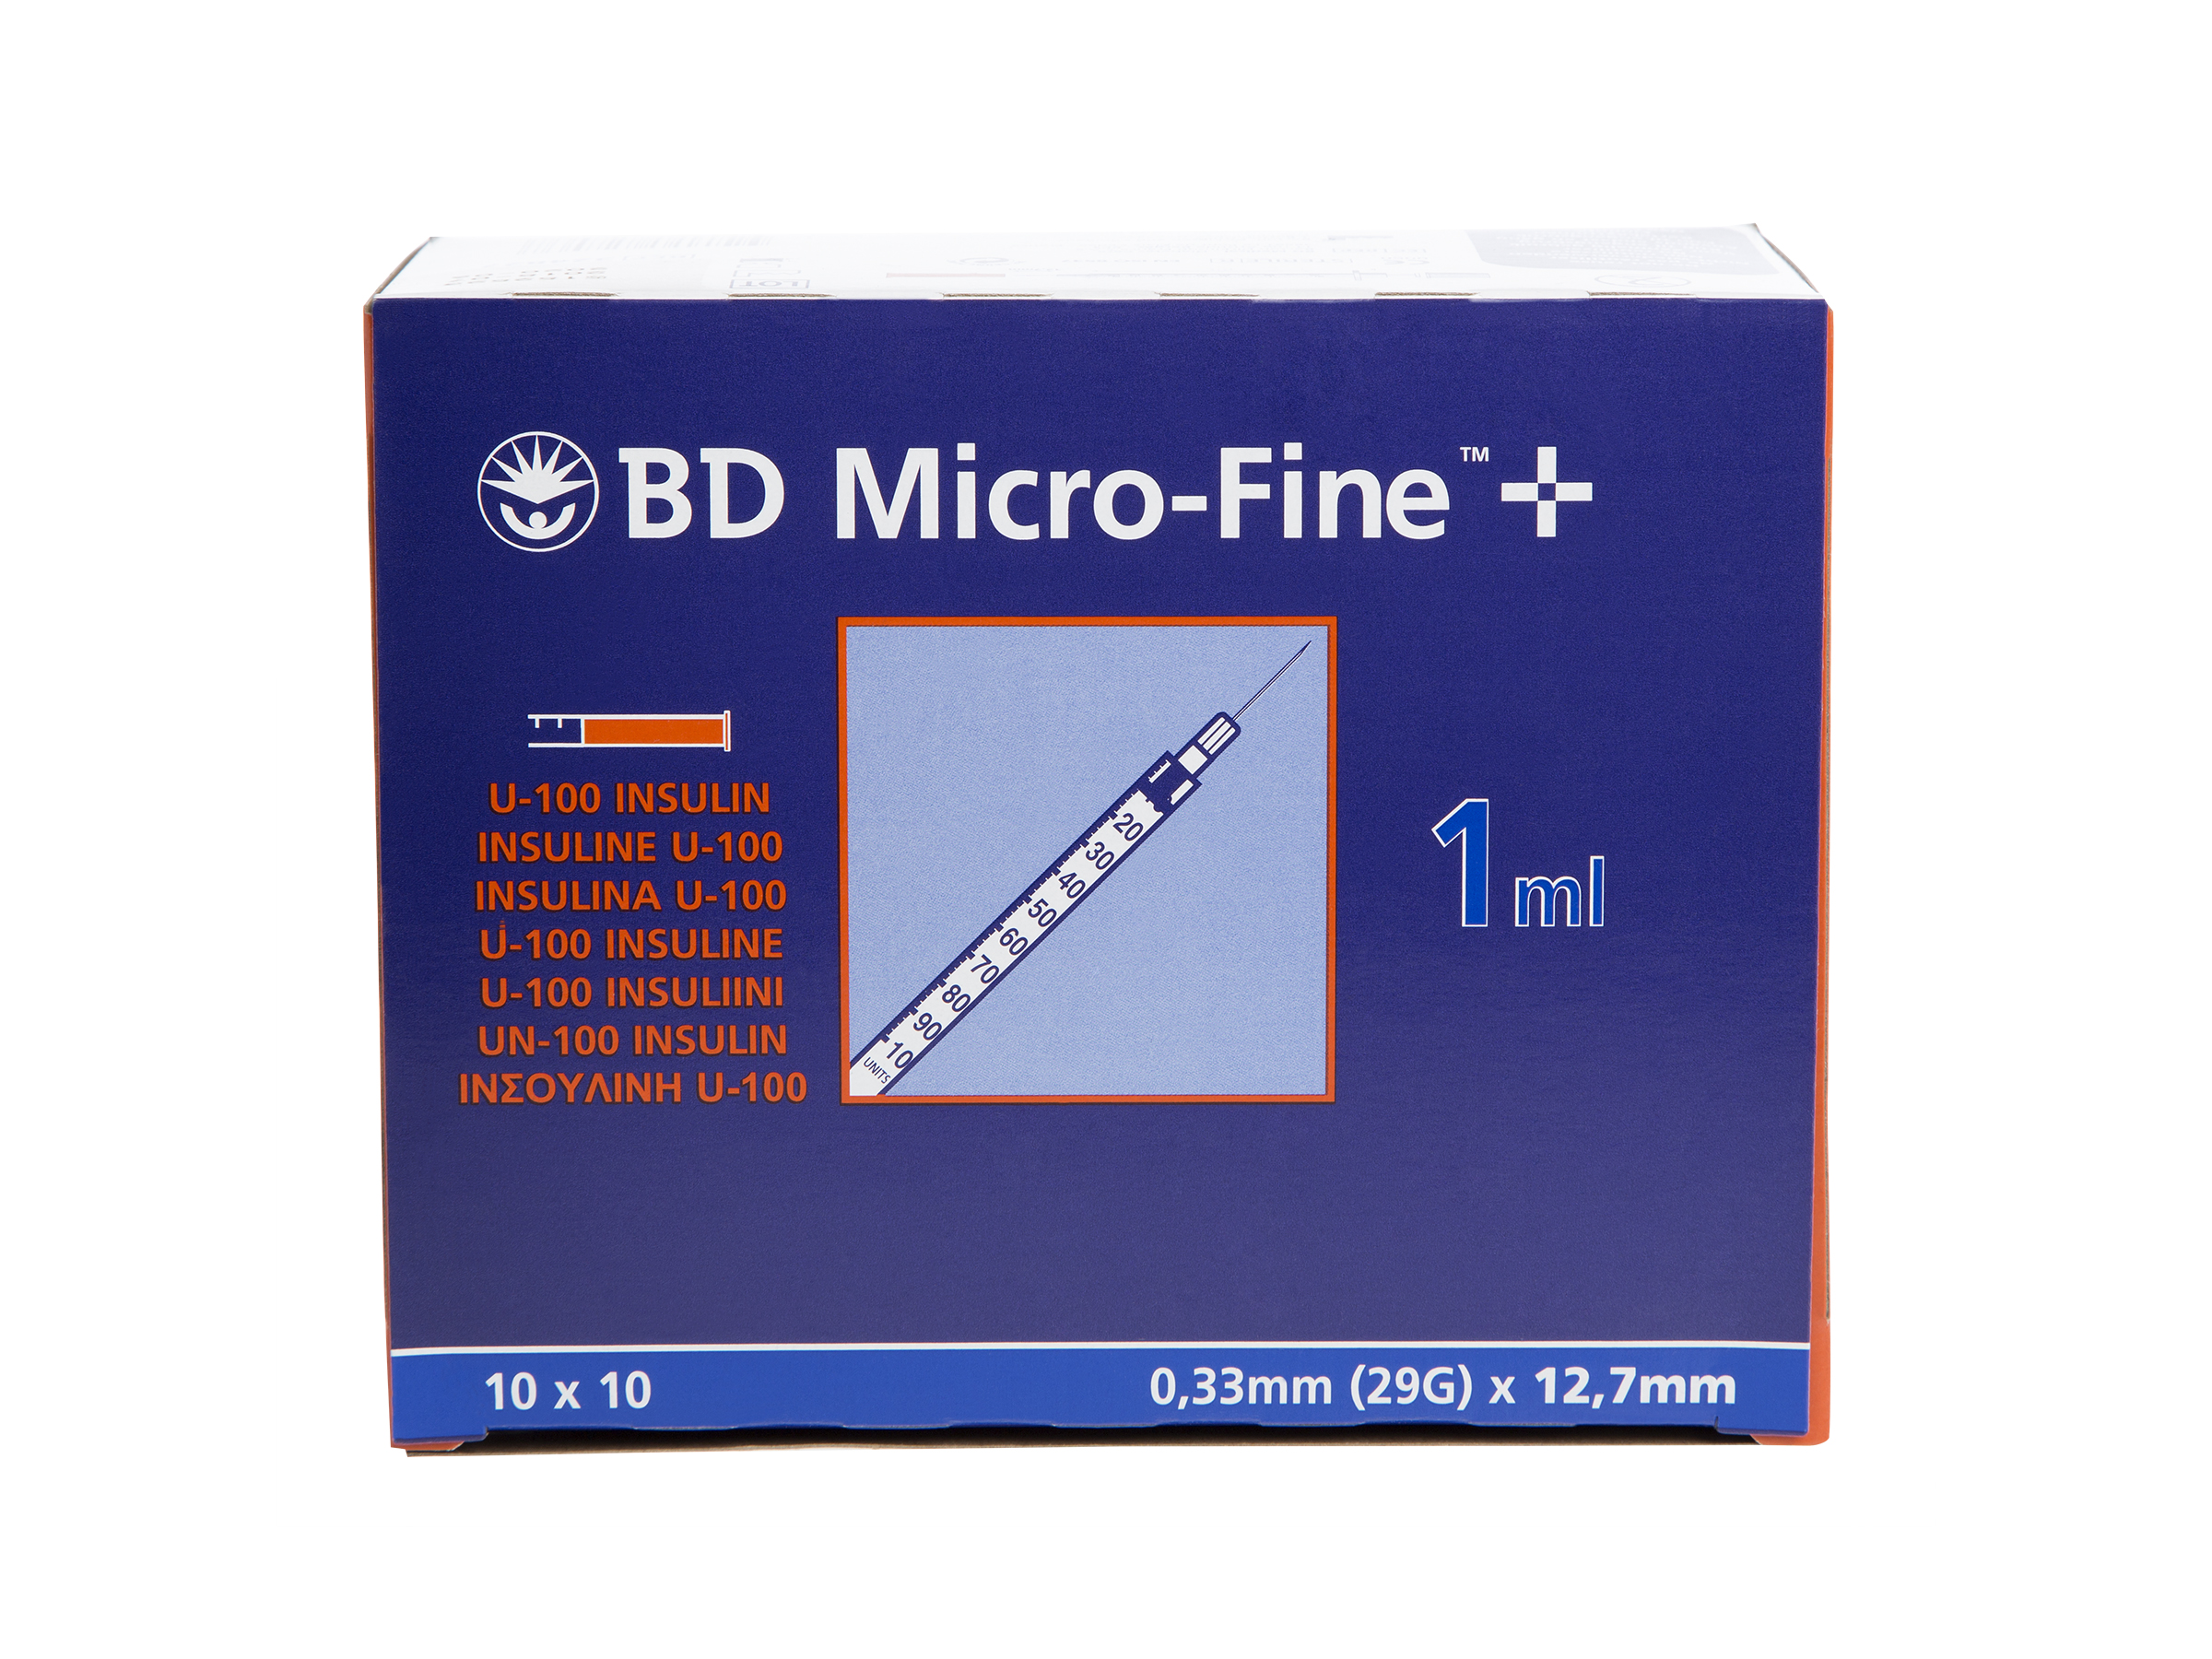 Micro-Fine sprøyte, 1ml 12,7mm, 100 stk.